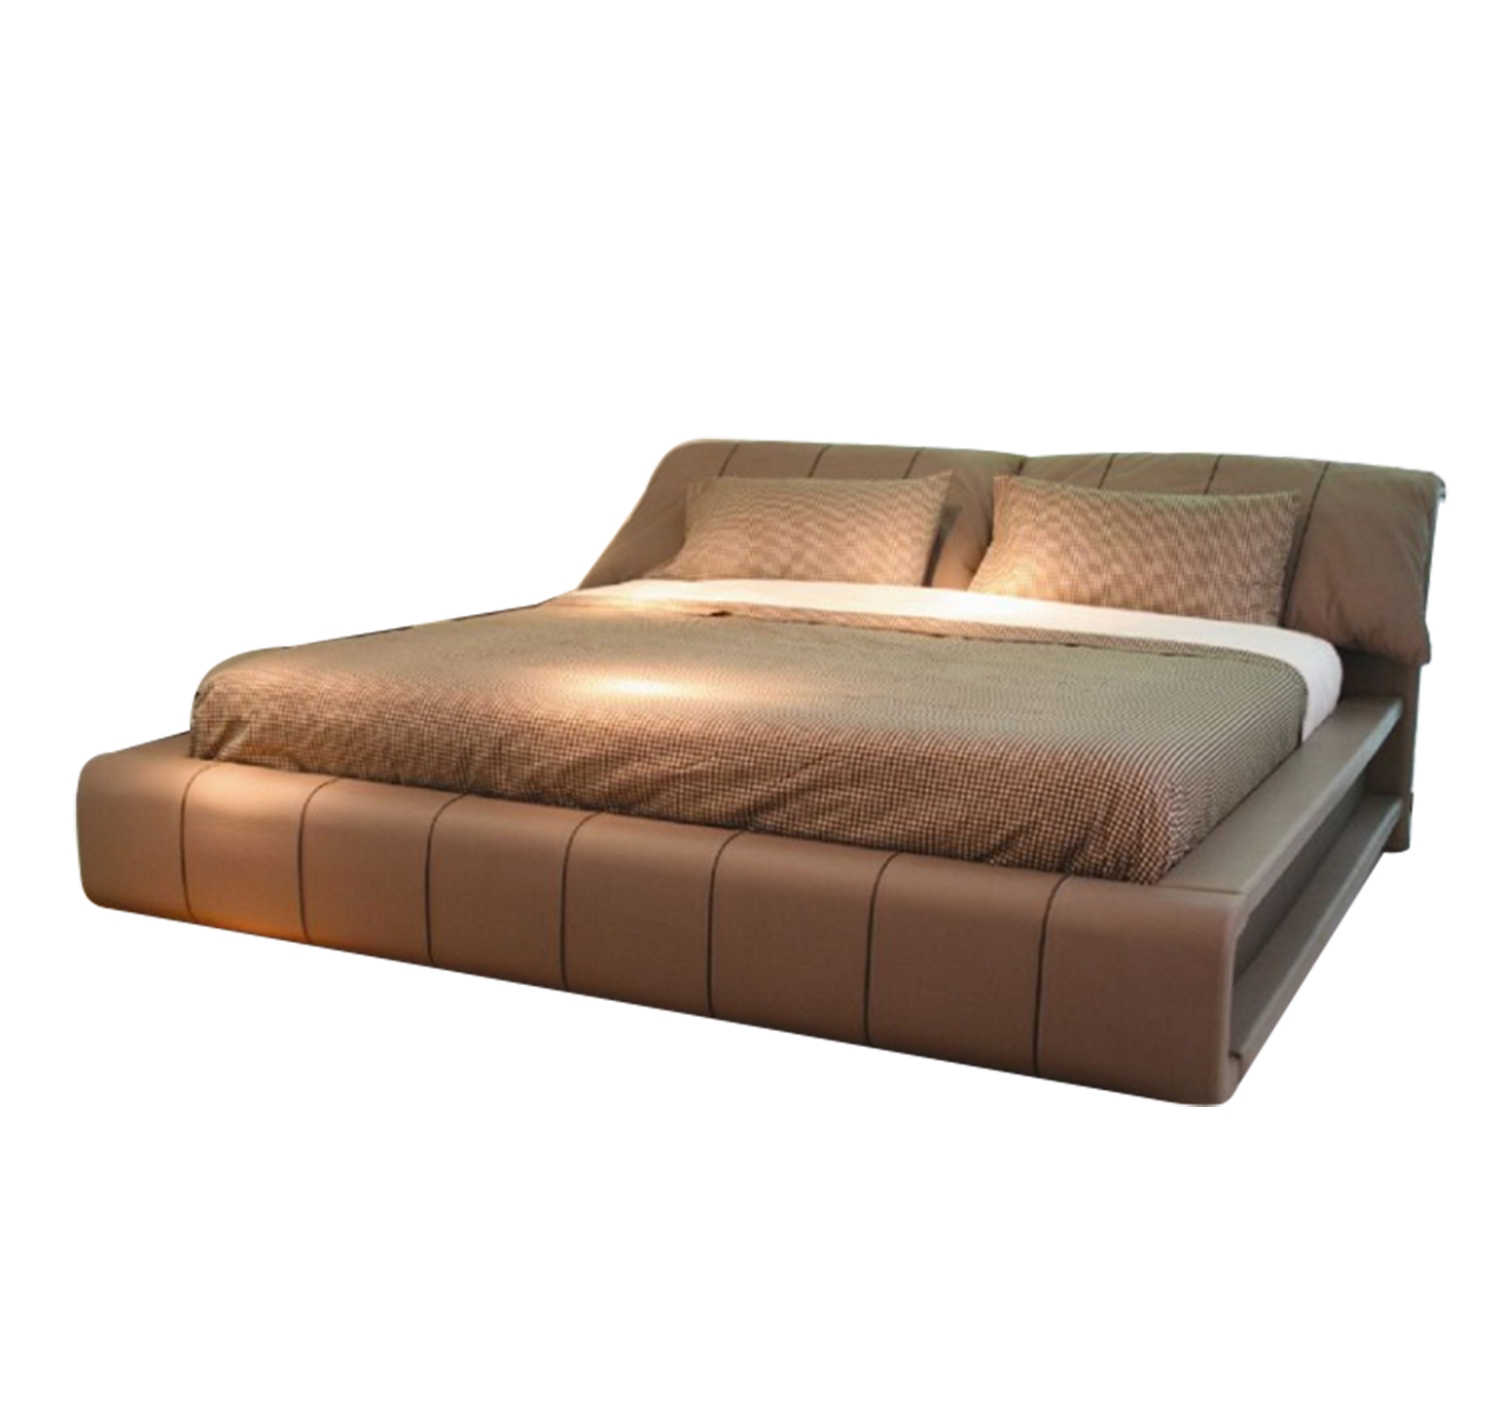 Với giường ngủ hiện đại nhập khẩu TT-1865, bạn sẽ có kinh nghiệm ngủ tuyệt vời nhất. Thiết kế cực kỳ thẩm mỹ và tinh tế của giường ngủ nhập khẩu hiện đại TT-1865, cùng chất lượng đáng tin cậy sẽ đem đến cho bạn giấc ngủ trọn vẹn.